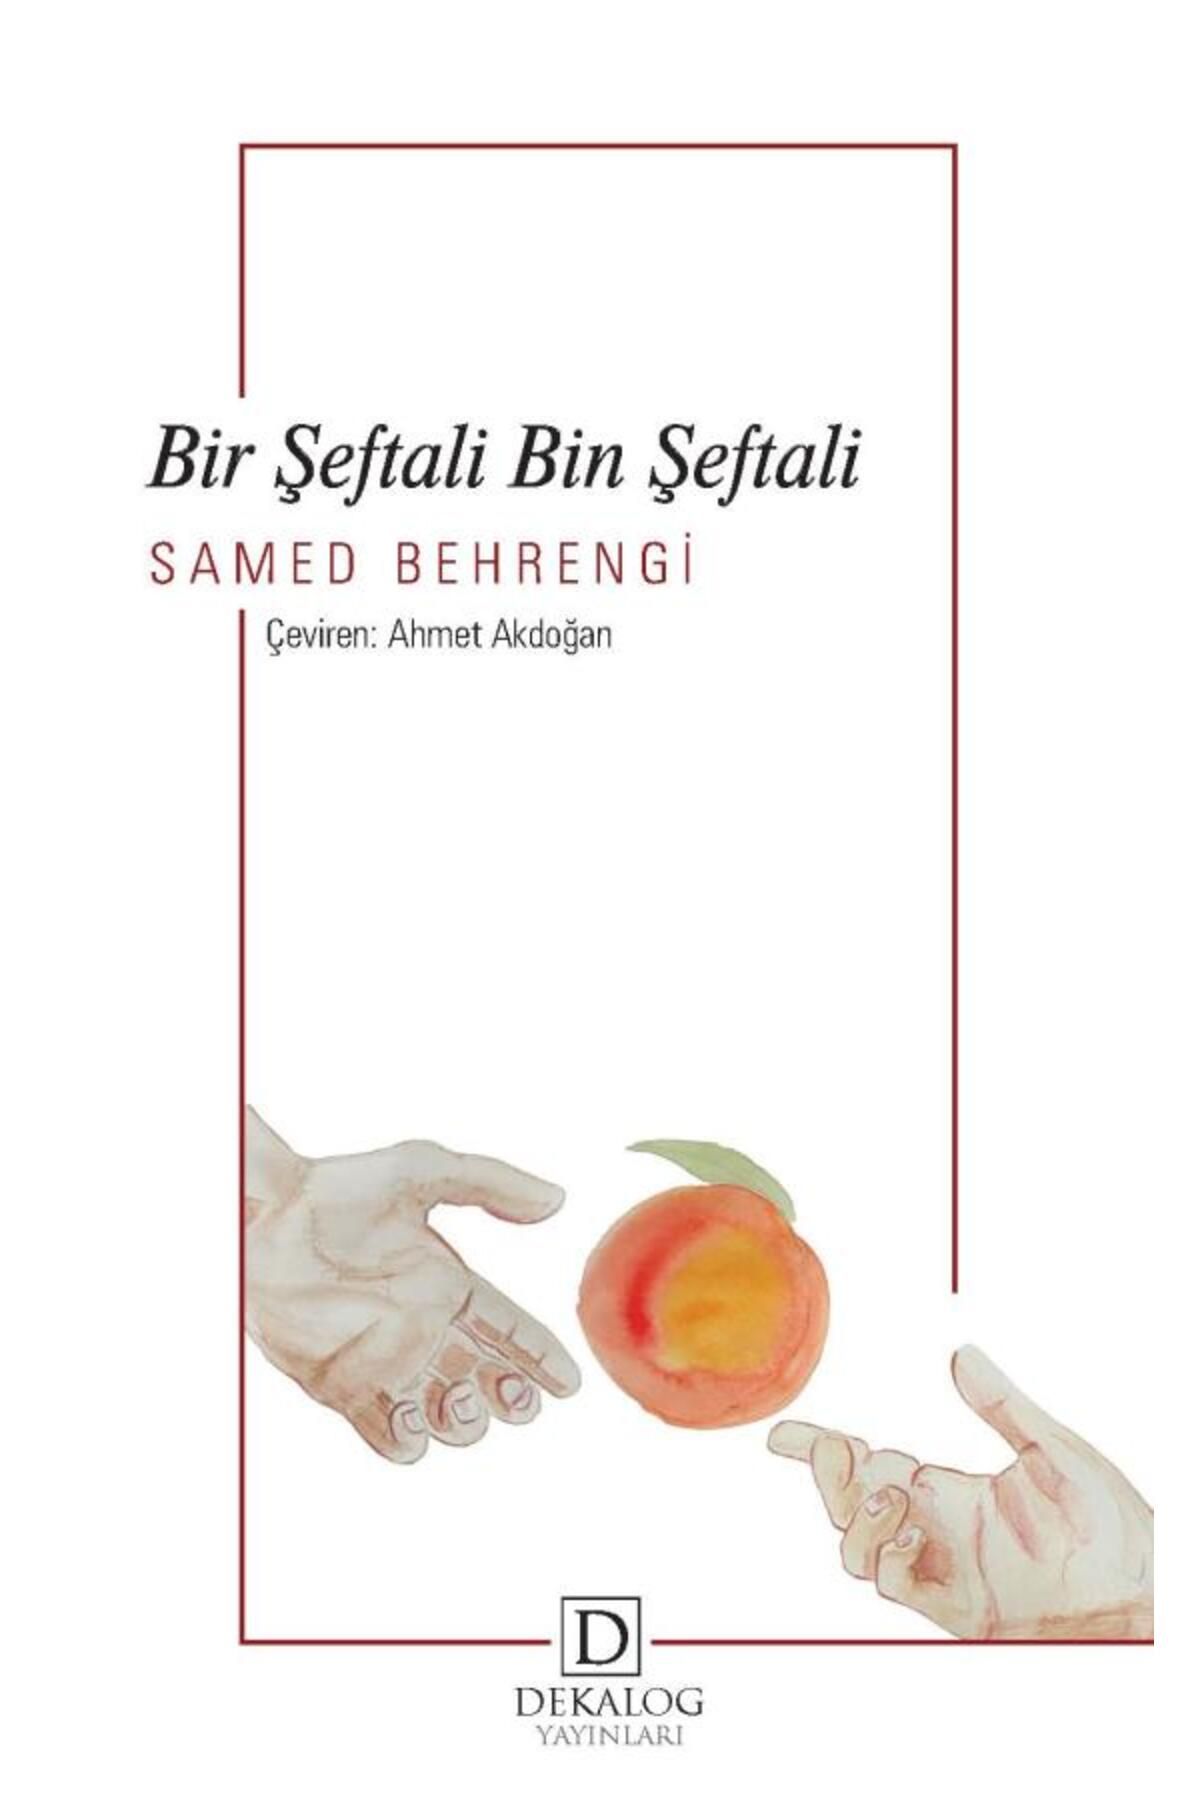 Dekalog Yayınları Bir Şeftali Bin Şeftali kitabı - Samed Behrengi - Dekalog Yayınları